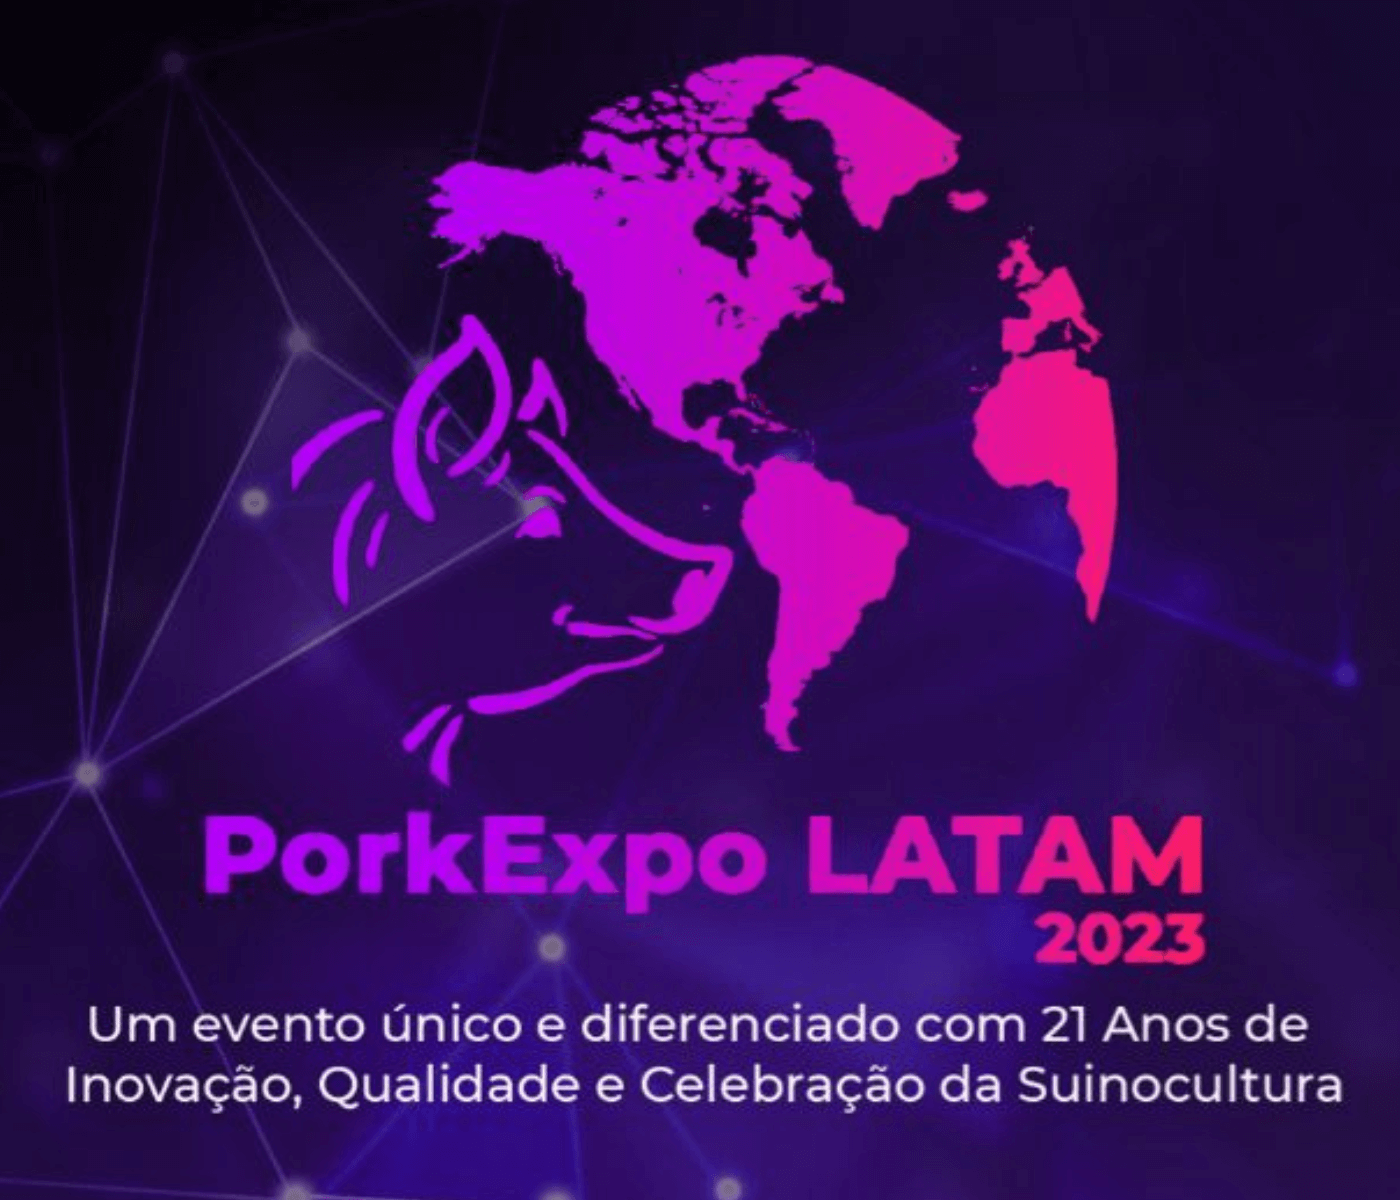 PorkExpo Latam 2023 é inovação total, confira algumas novidades!